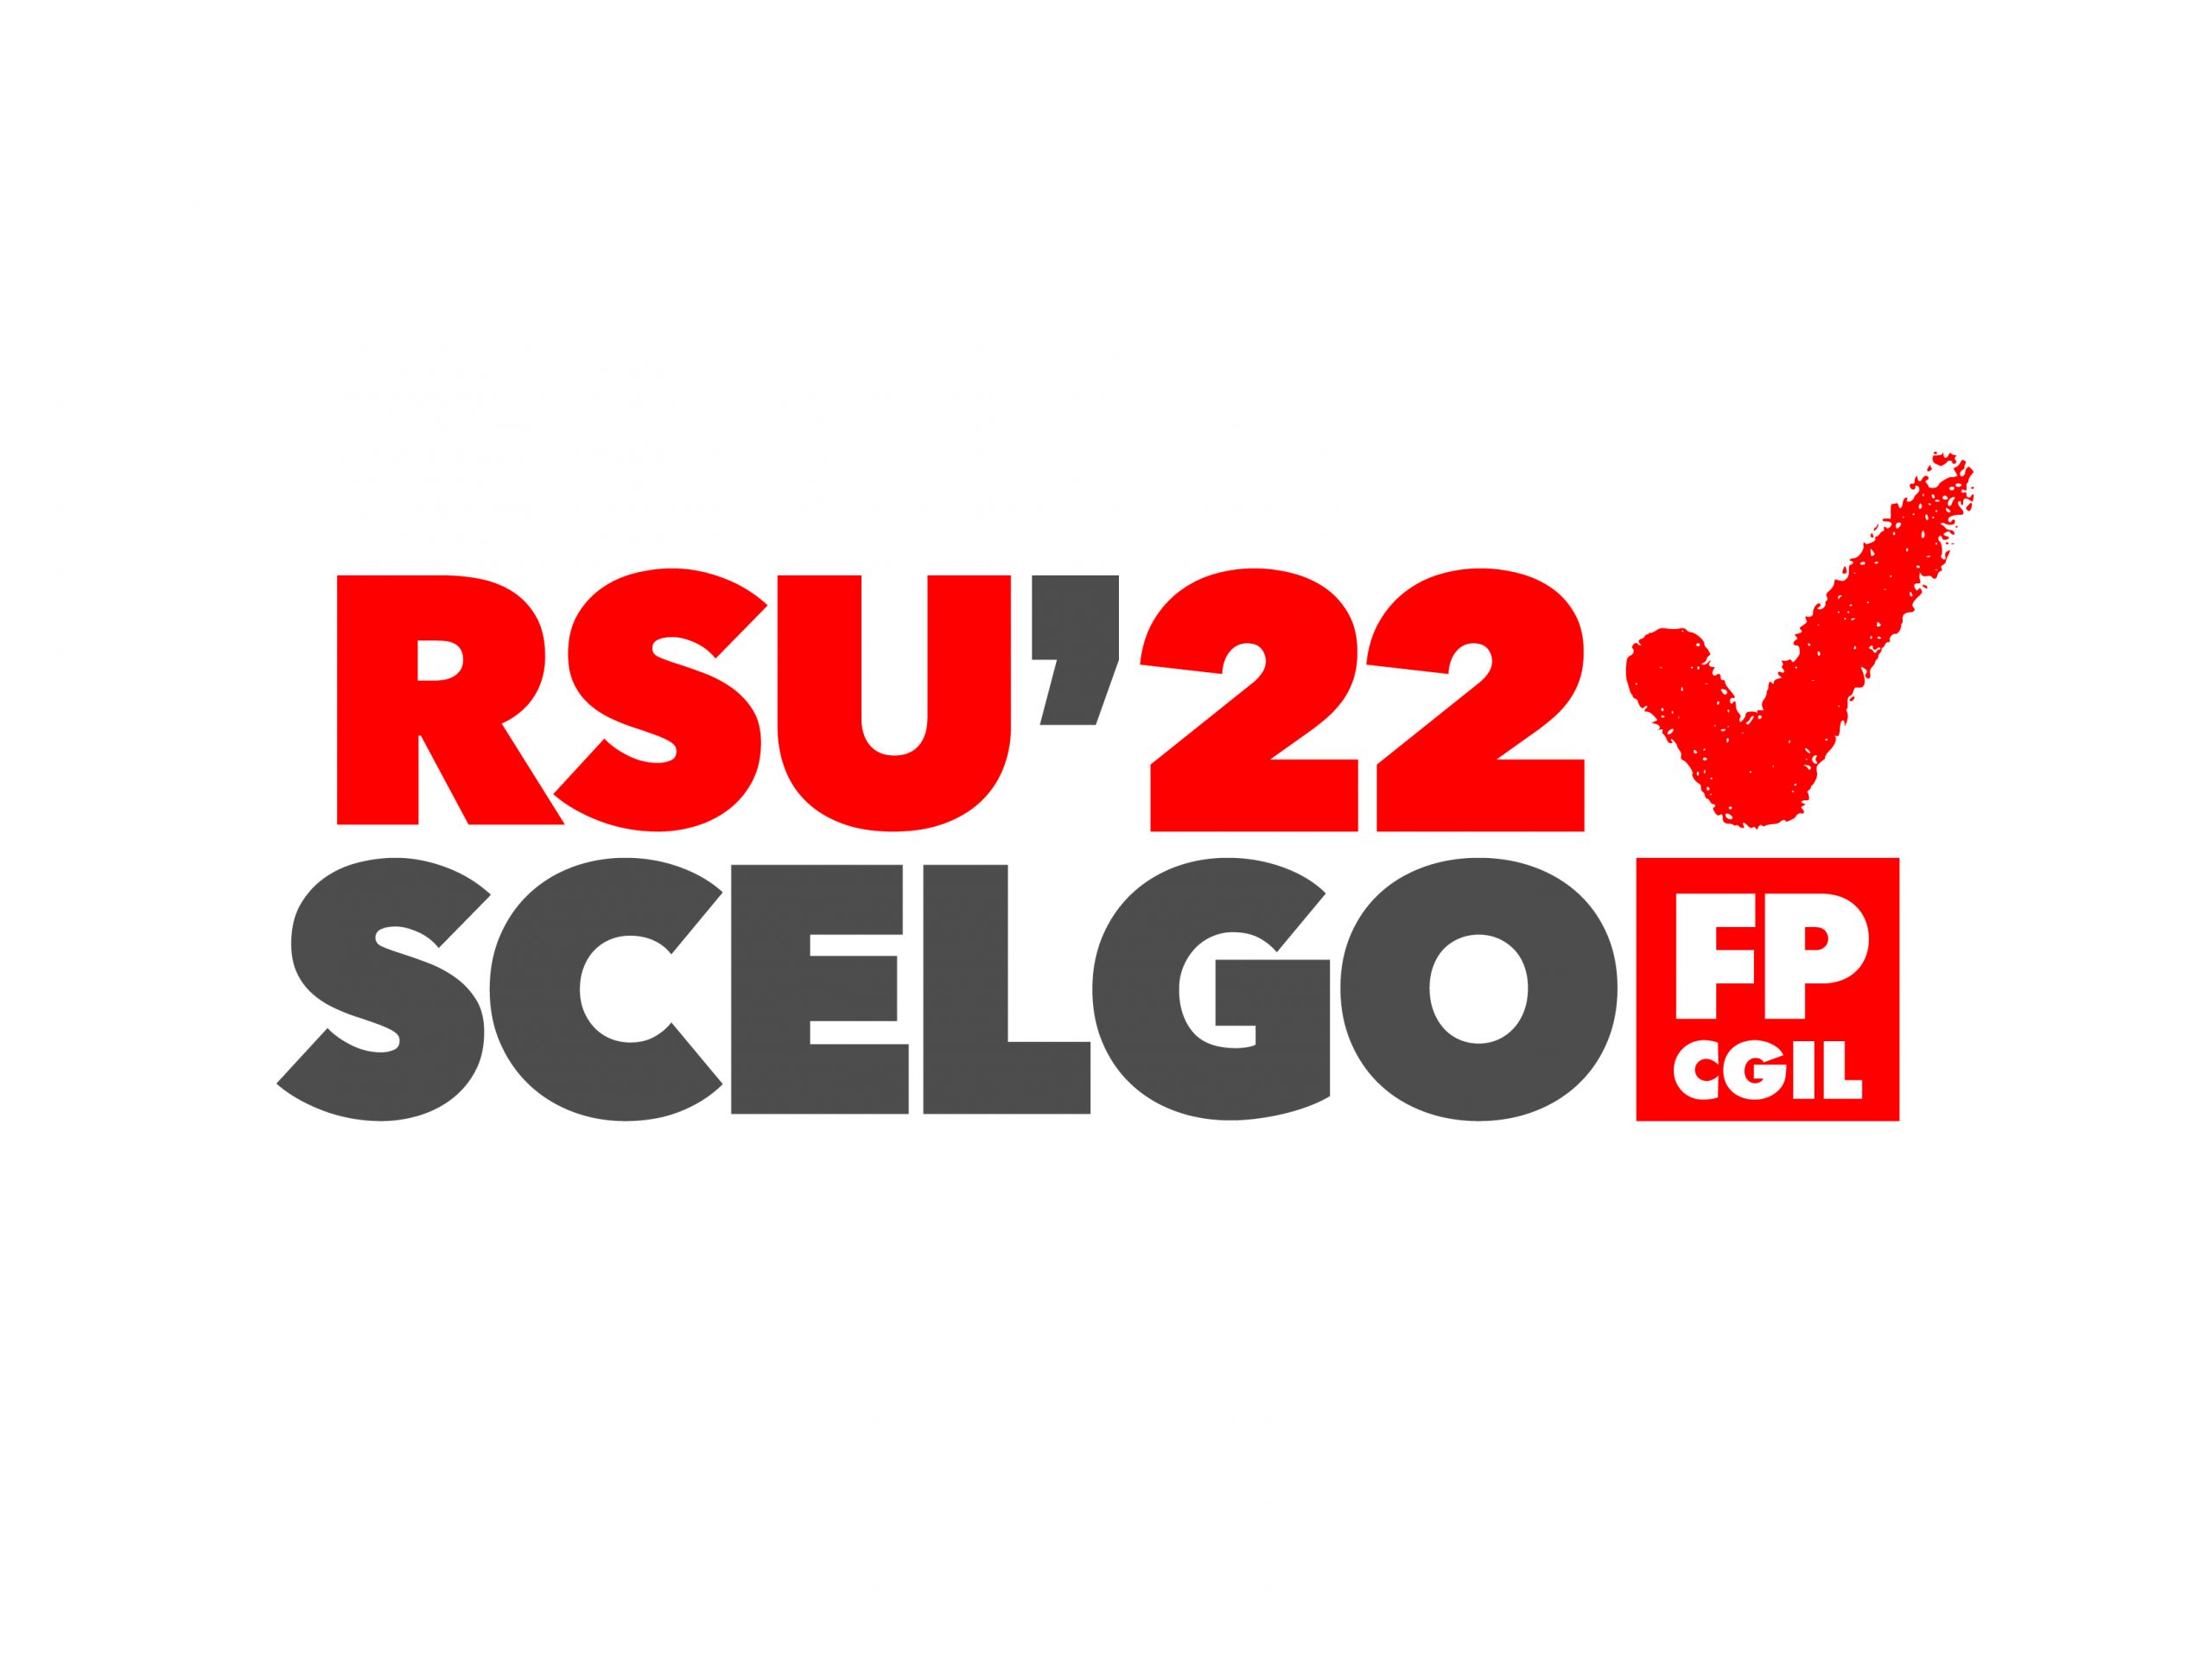 RSU 2022: ECCO TUTTE LE SCADENZE! [VIDEO]